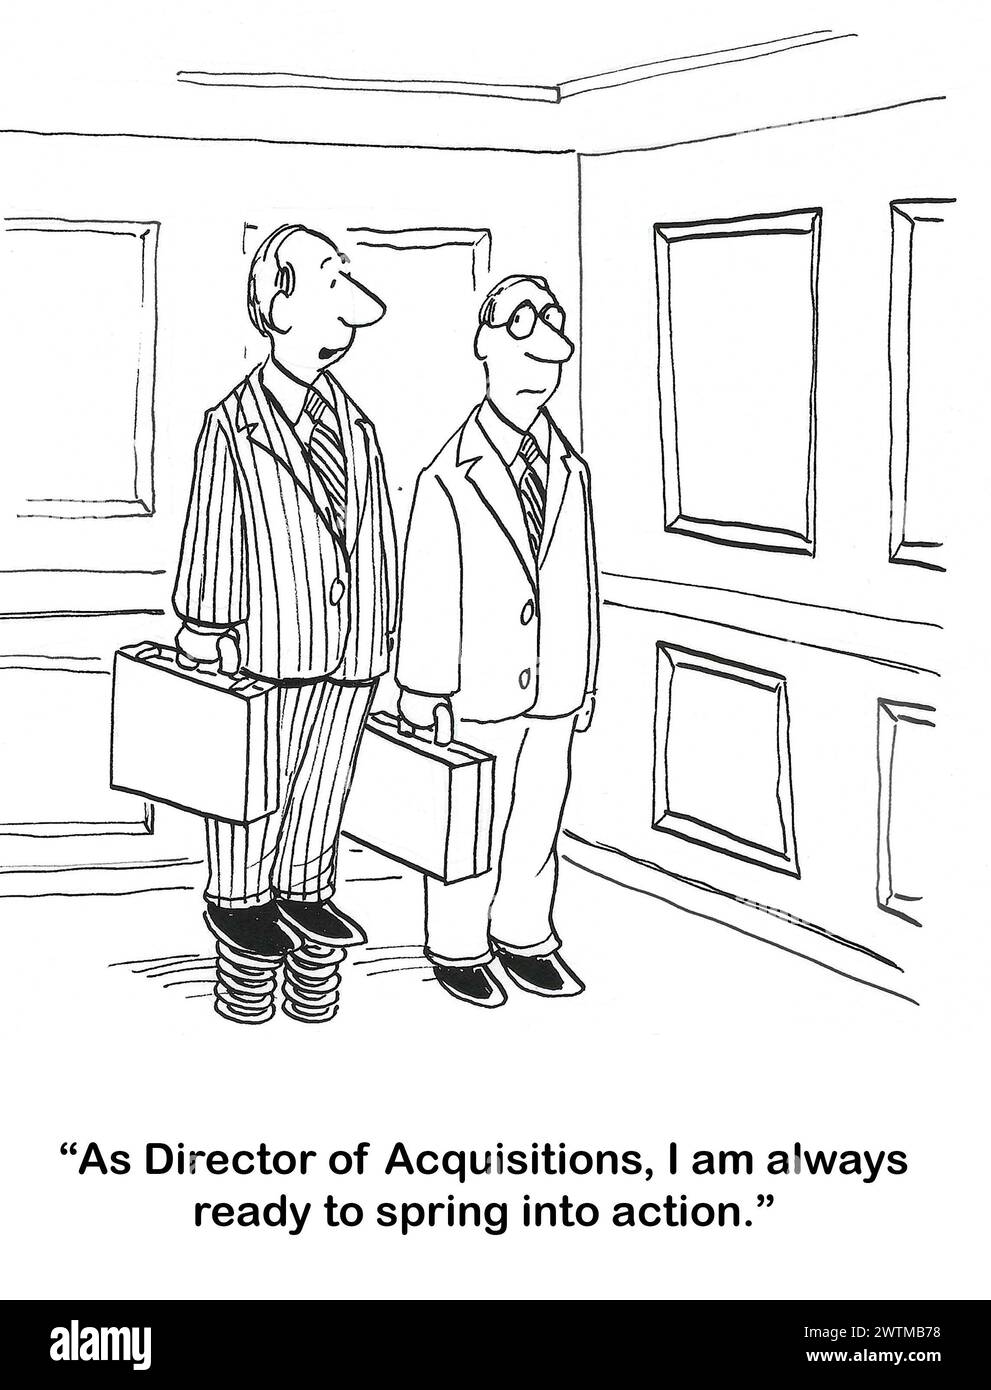 BW-Cartoon eines Director of Acquisition, der tatsächlich Federn auf seinen Schuhen hat, sodass er noch mehr bereit ist, „in Aktion zu treten“. Stockfoto